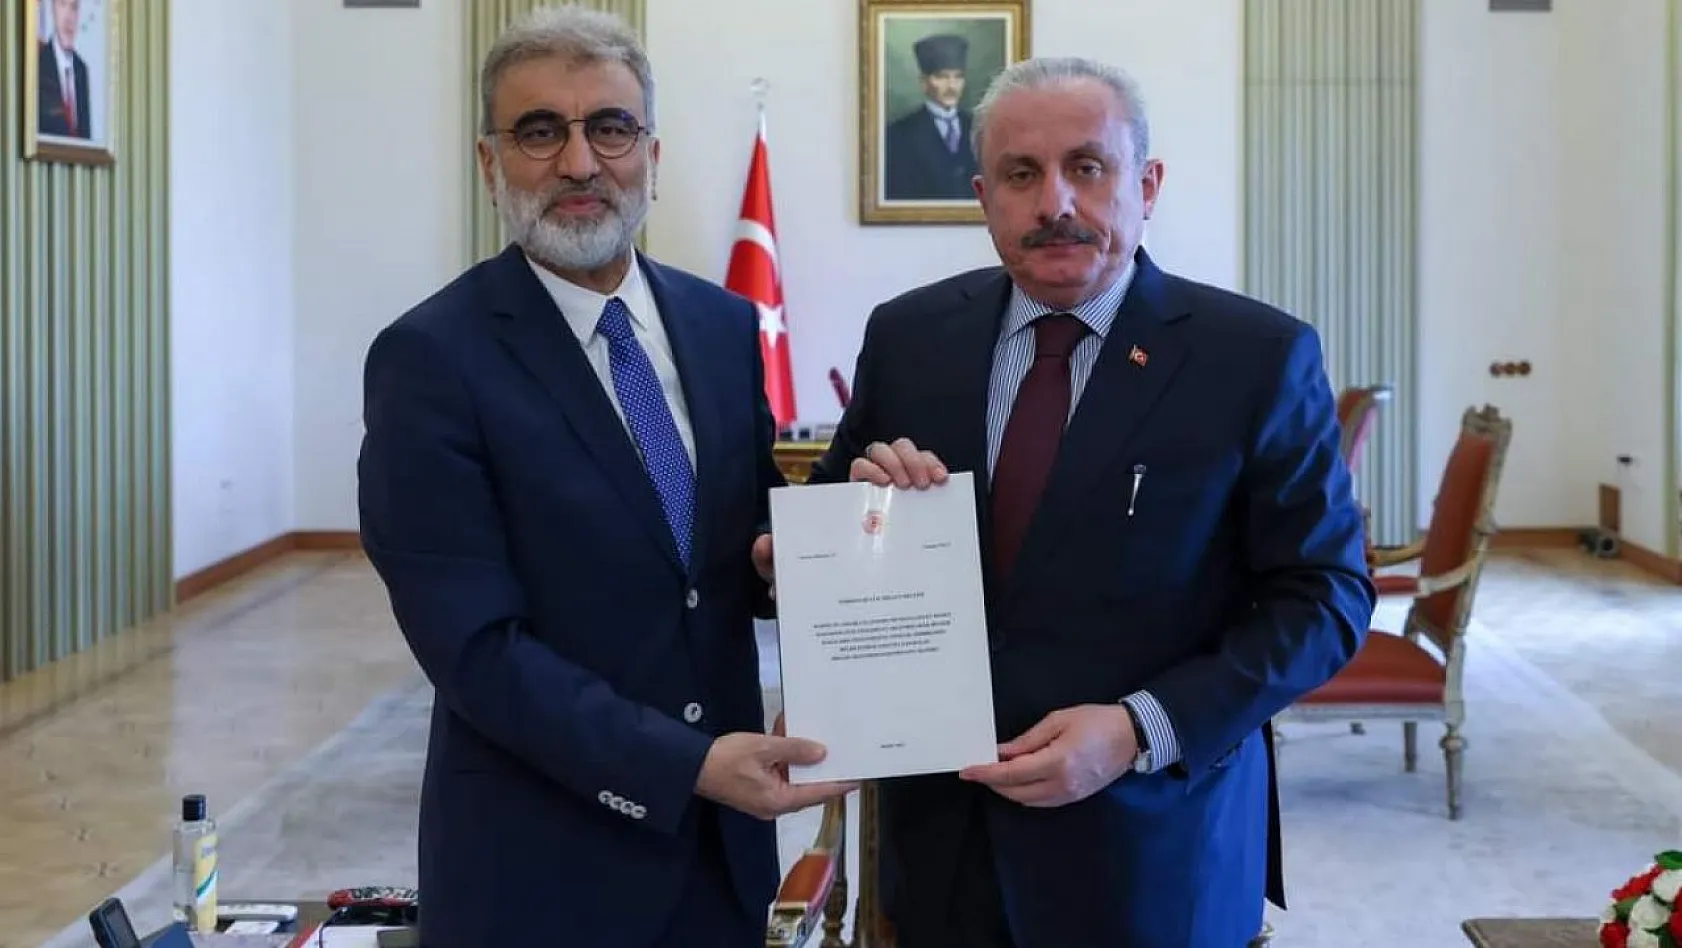 AK Partili Yıldız, Meclis Başkanına giderayak ne dosyası verdi!